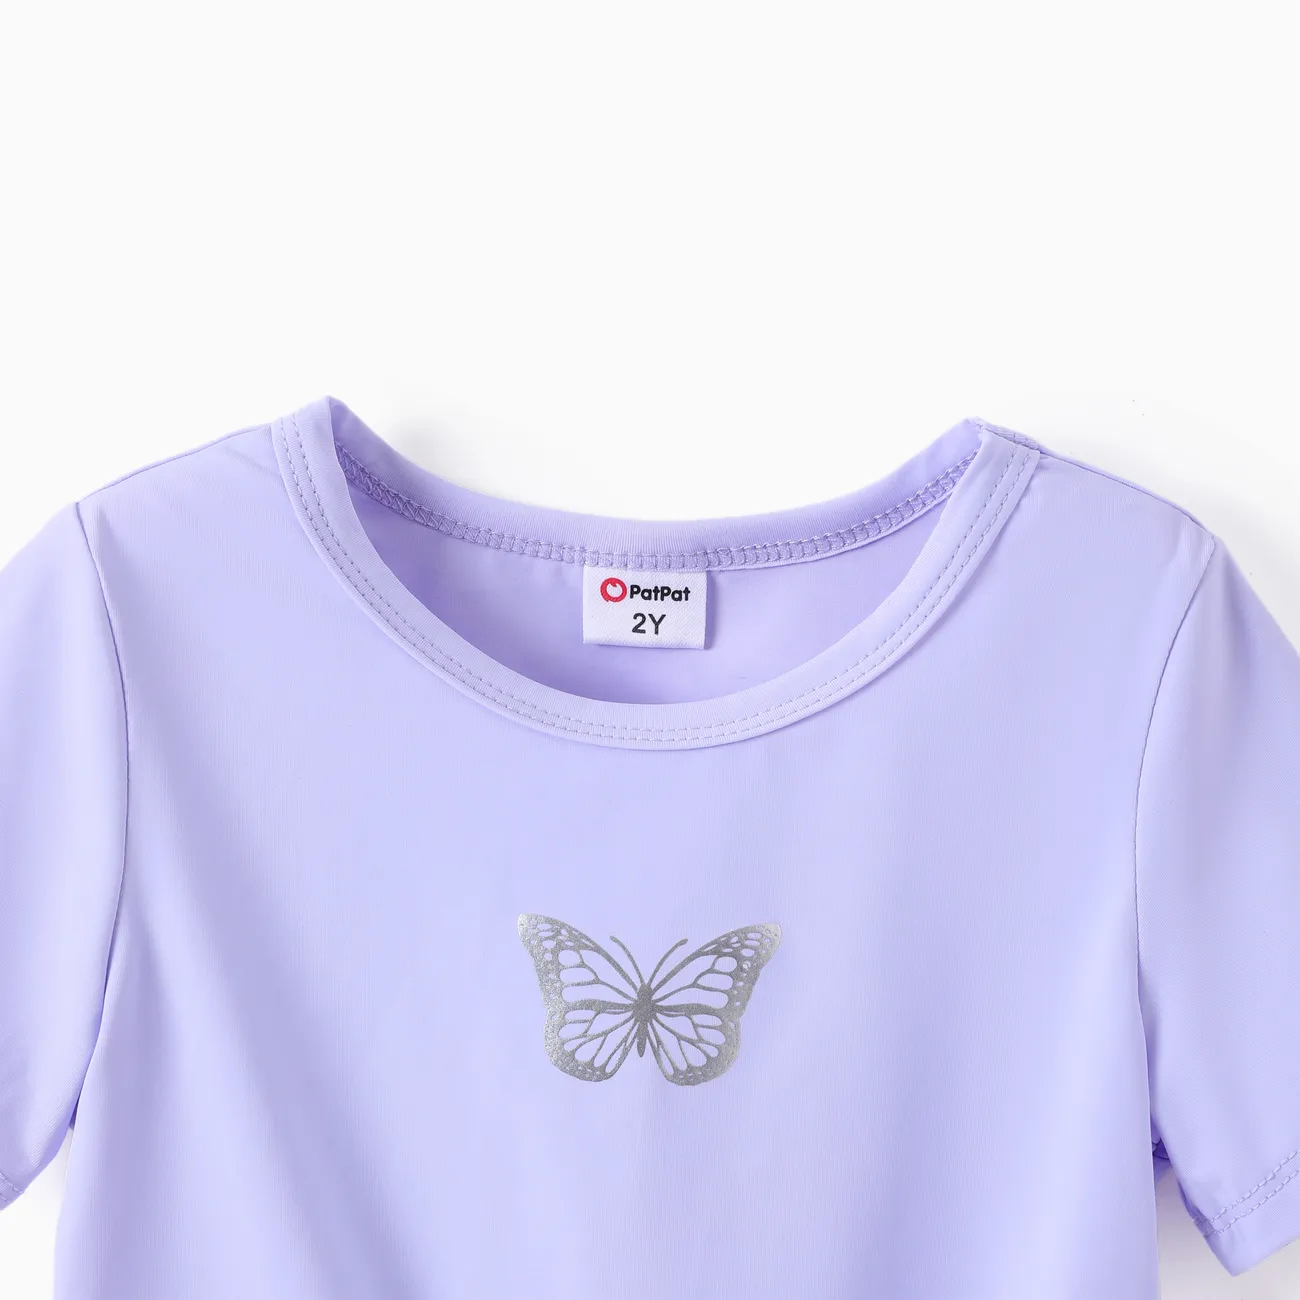 幼兒/兒童女孩 2 件套 T 恤和緊身褲套裝 紫色 big image 1